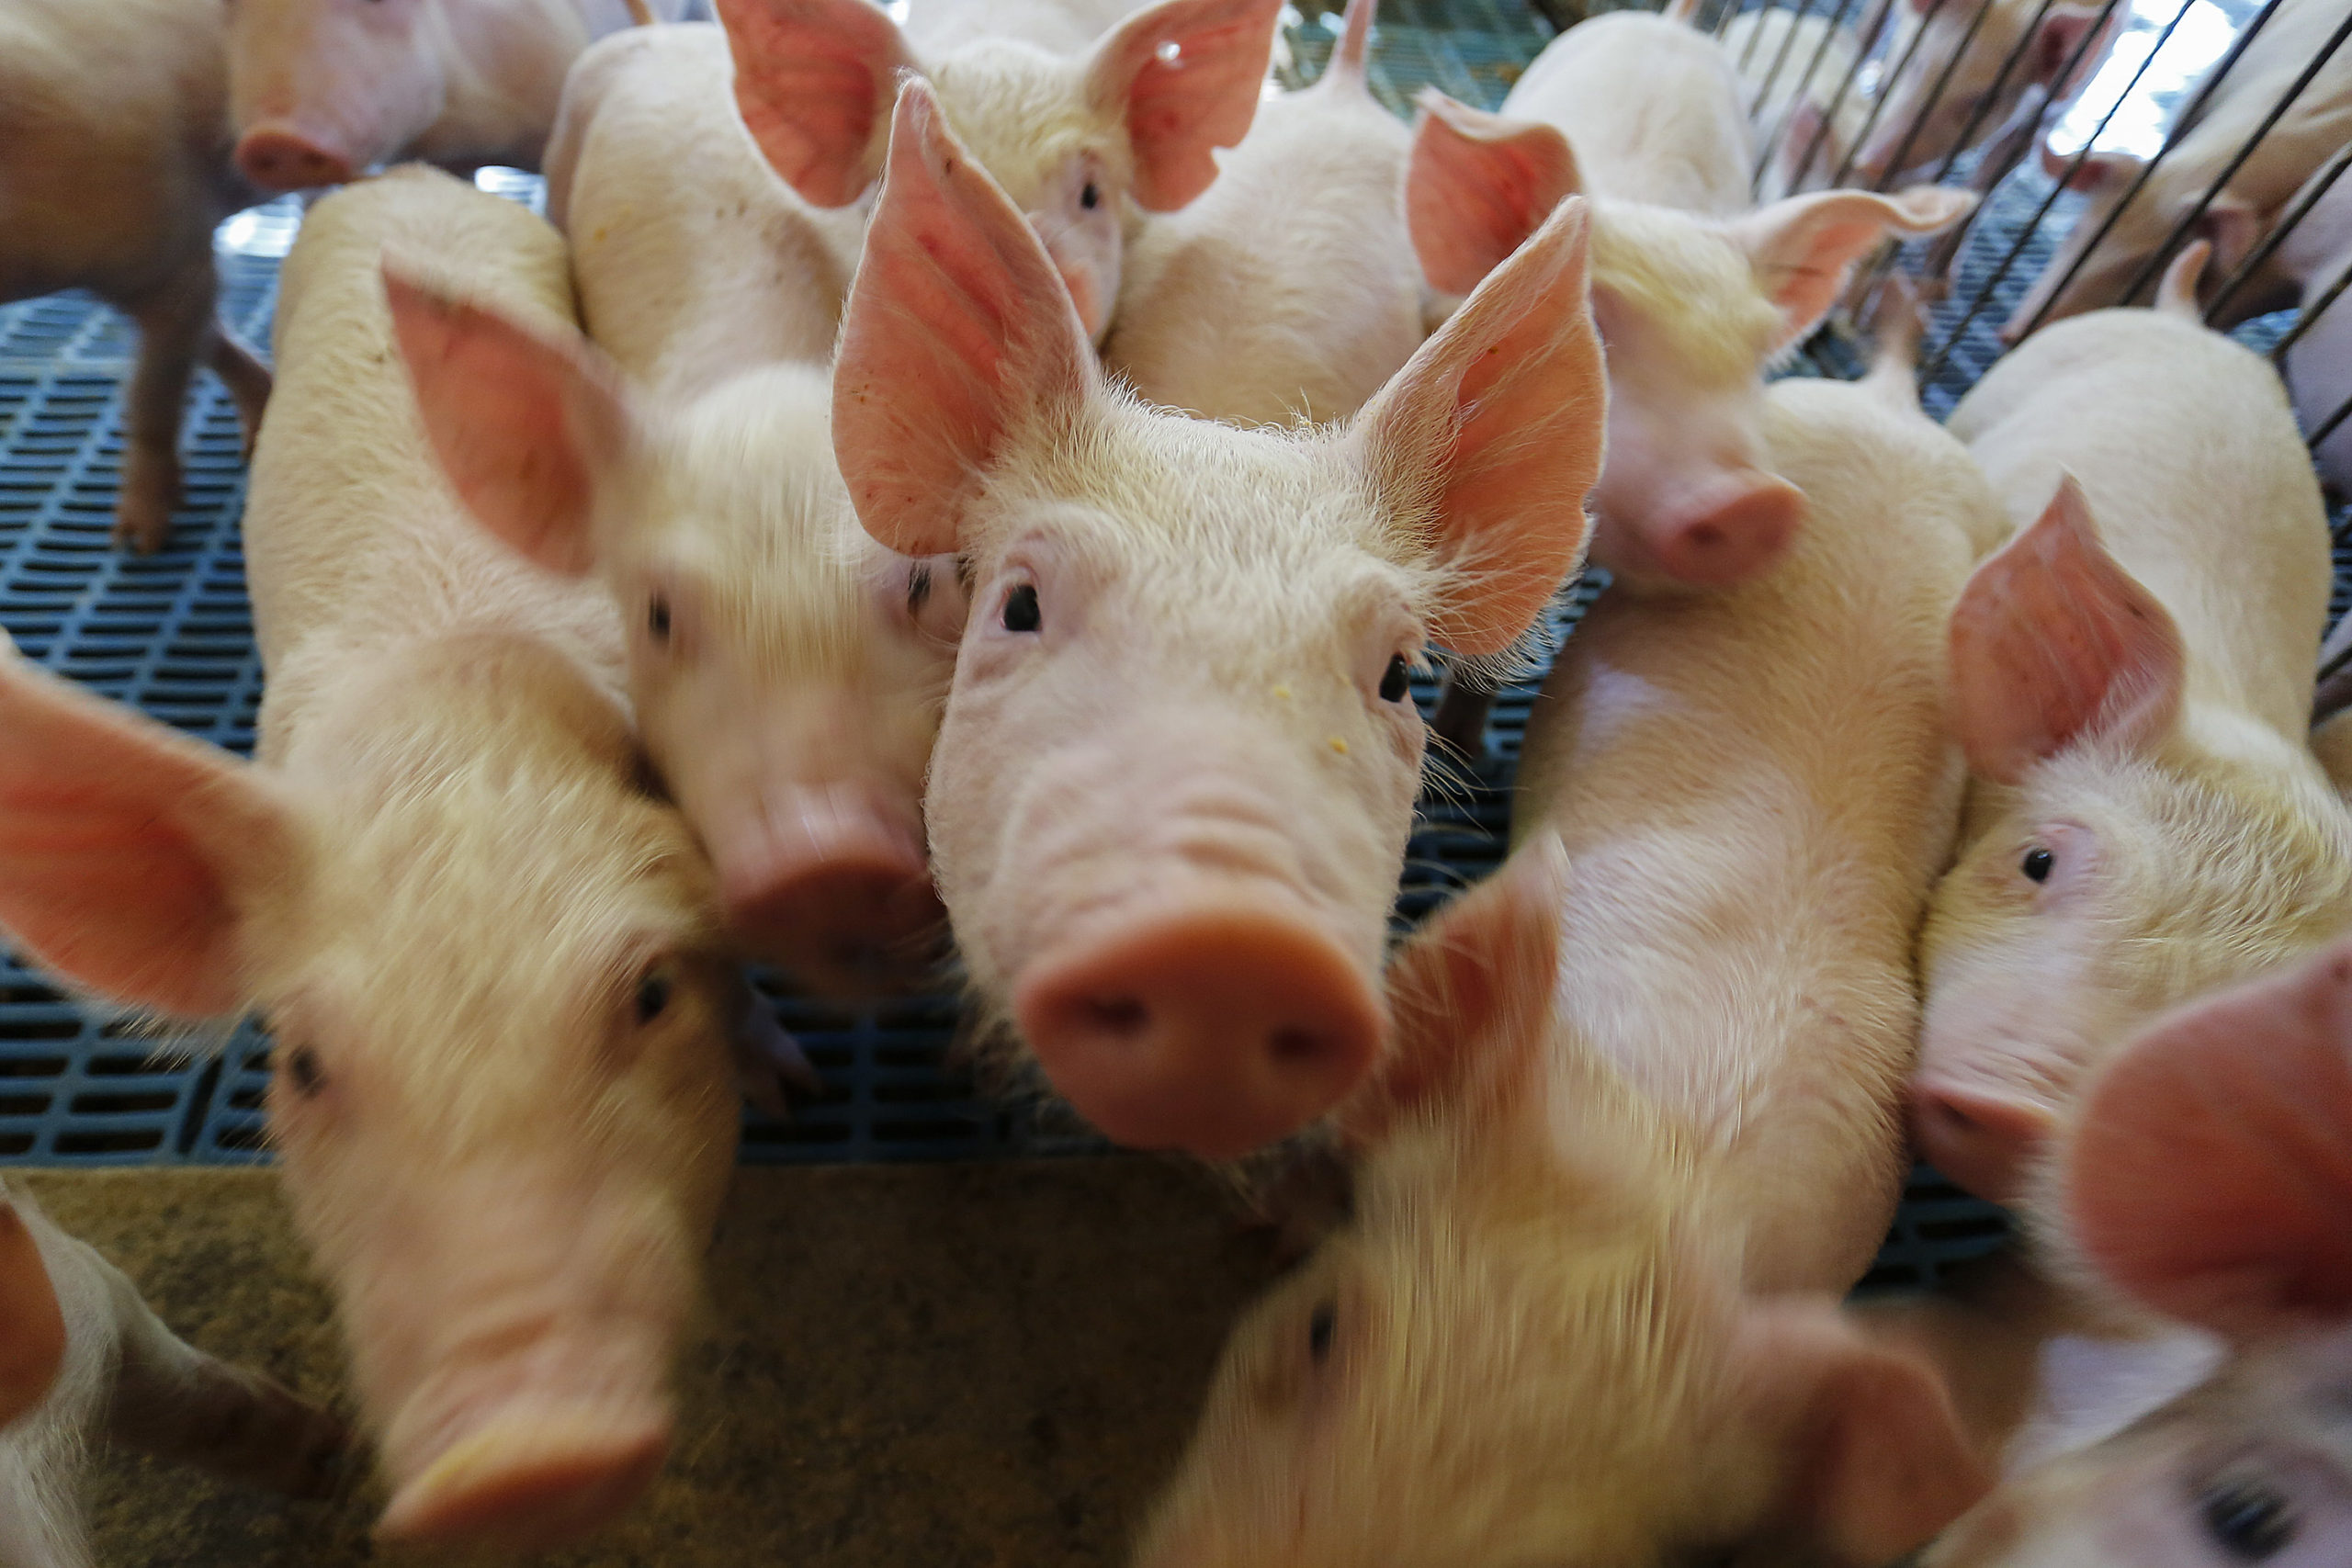  Produção de carne suína cresce 9% no primeiro trimestre no Paraná, aponta IBGE